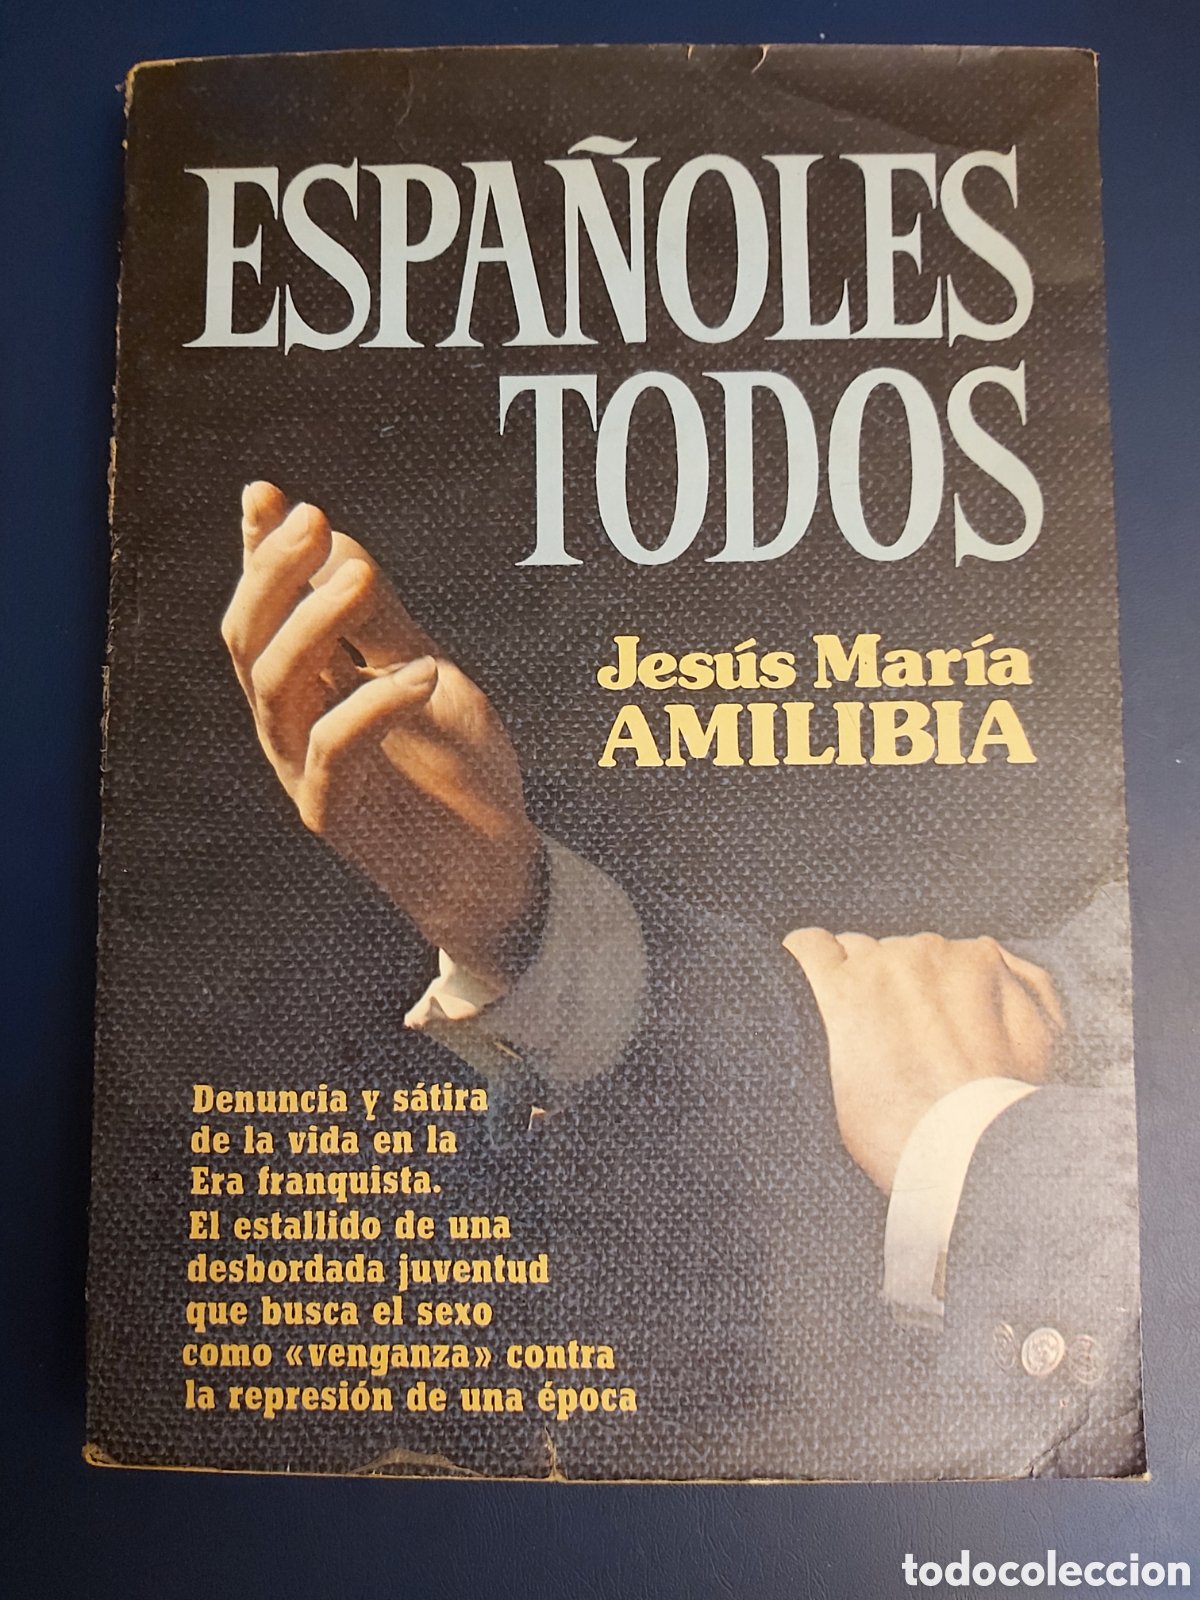 marcapaginas - plaza y janes - el viñedo de la - Buy Antique and  collectible bookmarks on todocoleccion